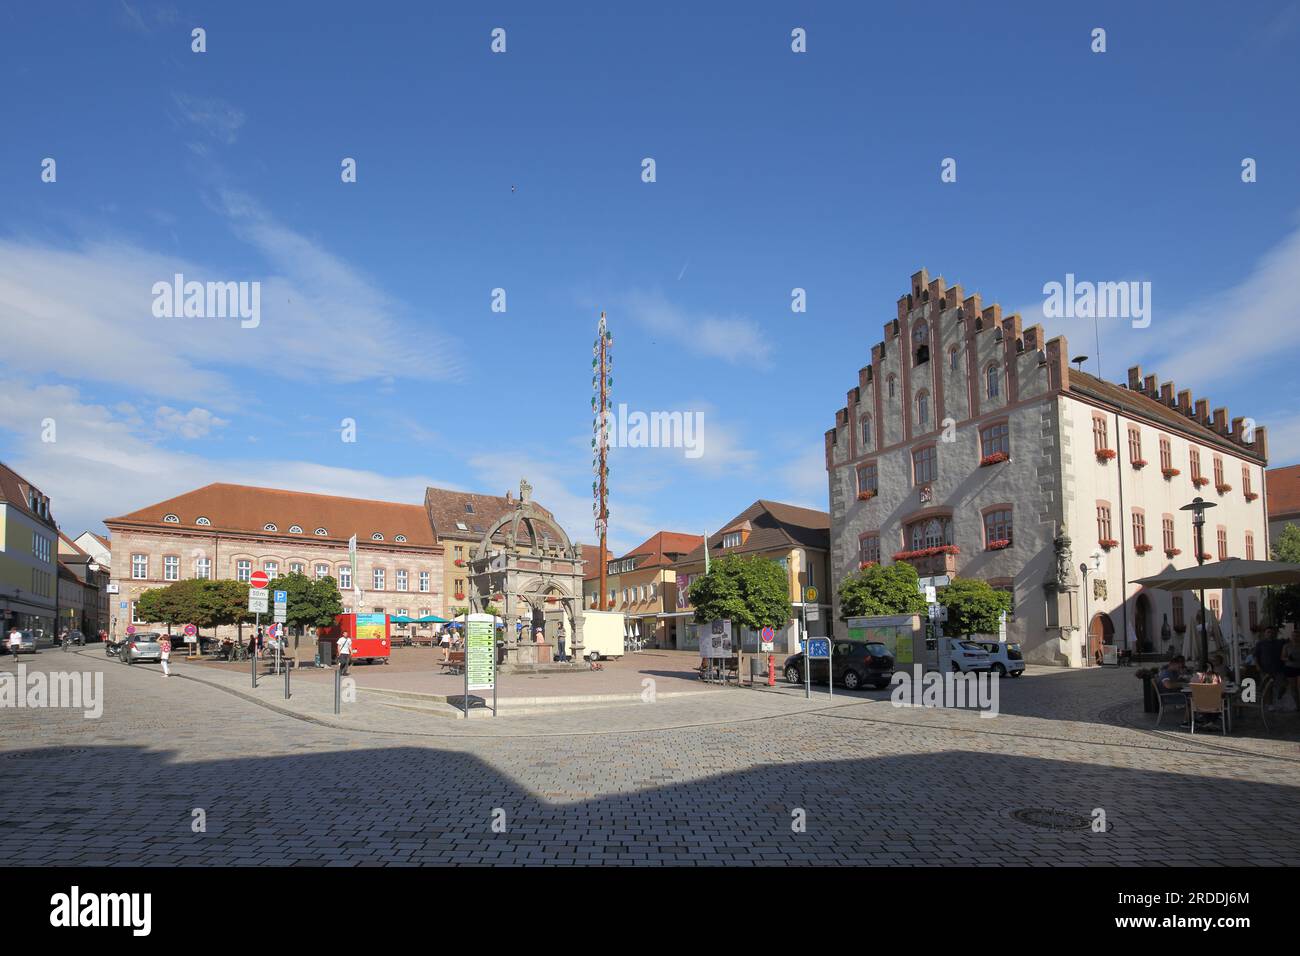 Marktplatz mit Rathaus, Maypole und Brunnen in Hammelburg, Niederfrankreich, Franken, Bayern, Deutschland Stockfoto